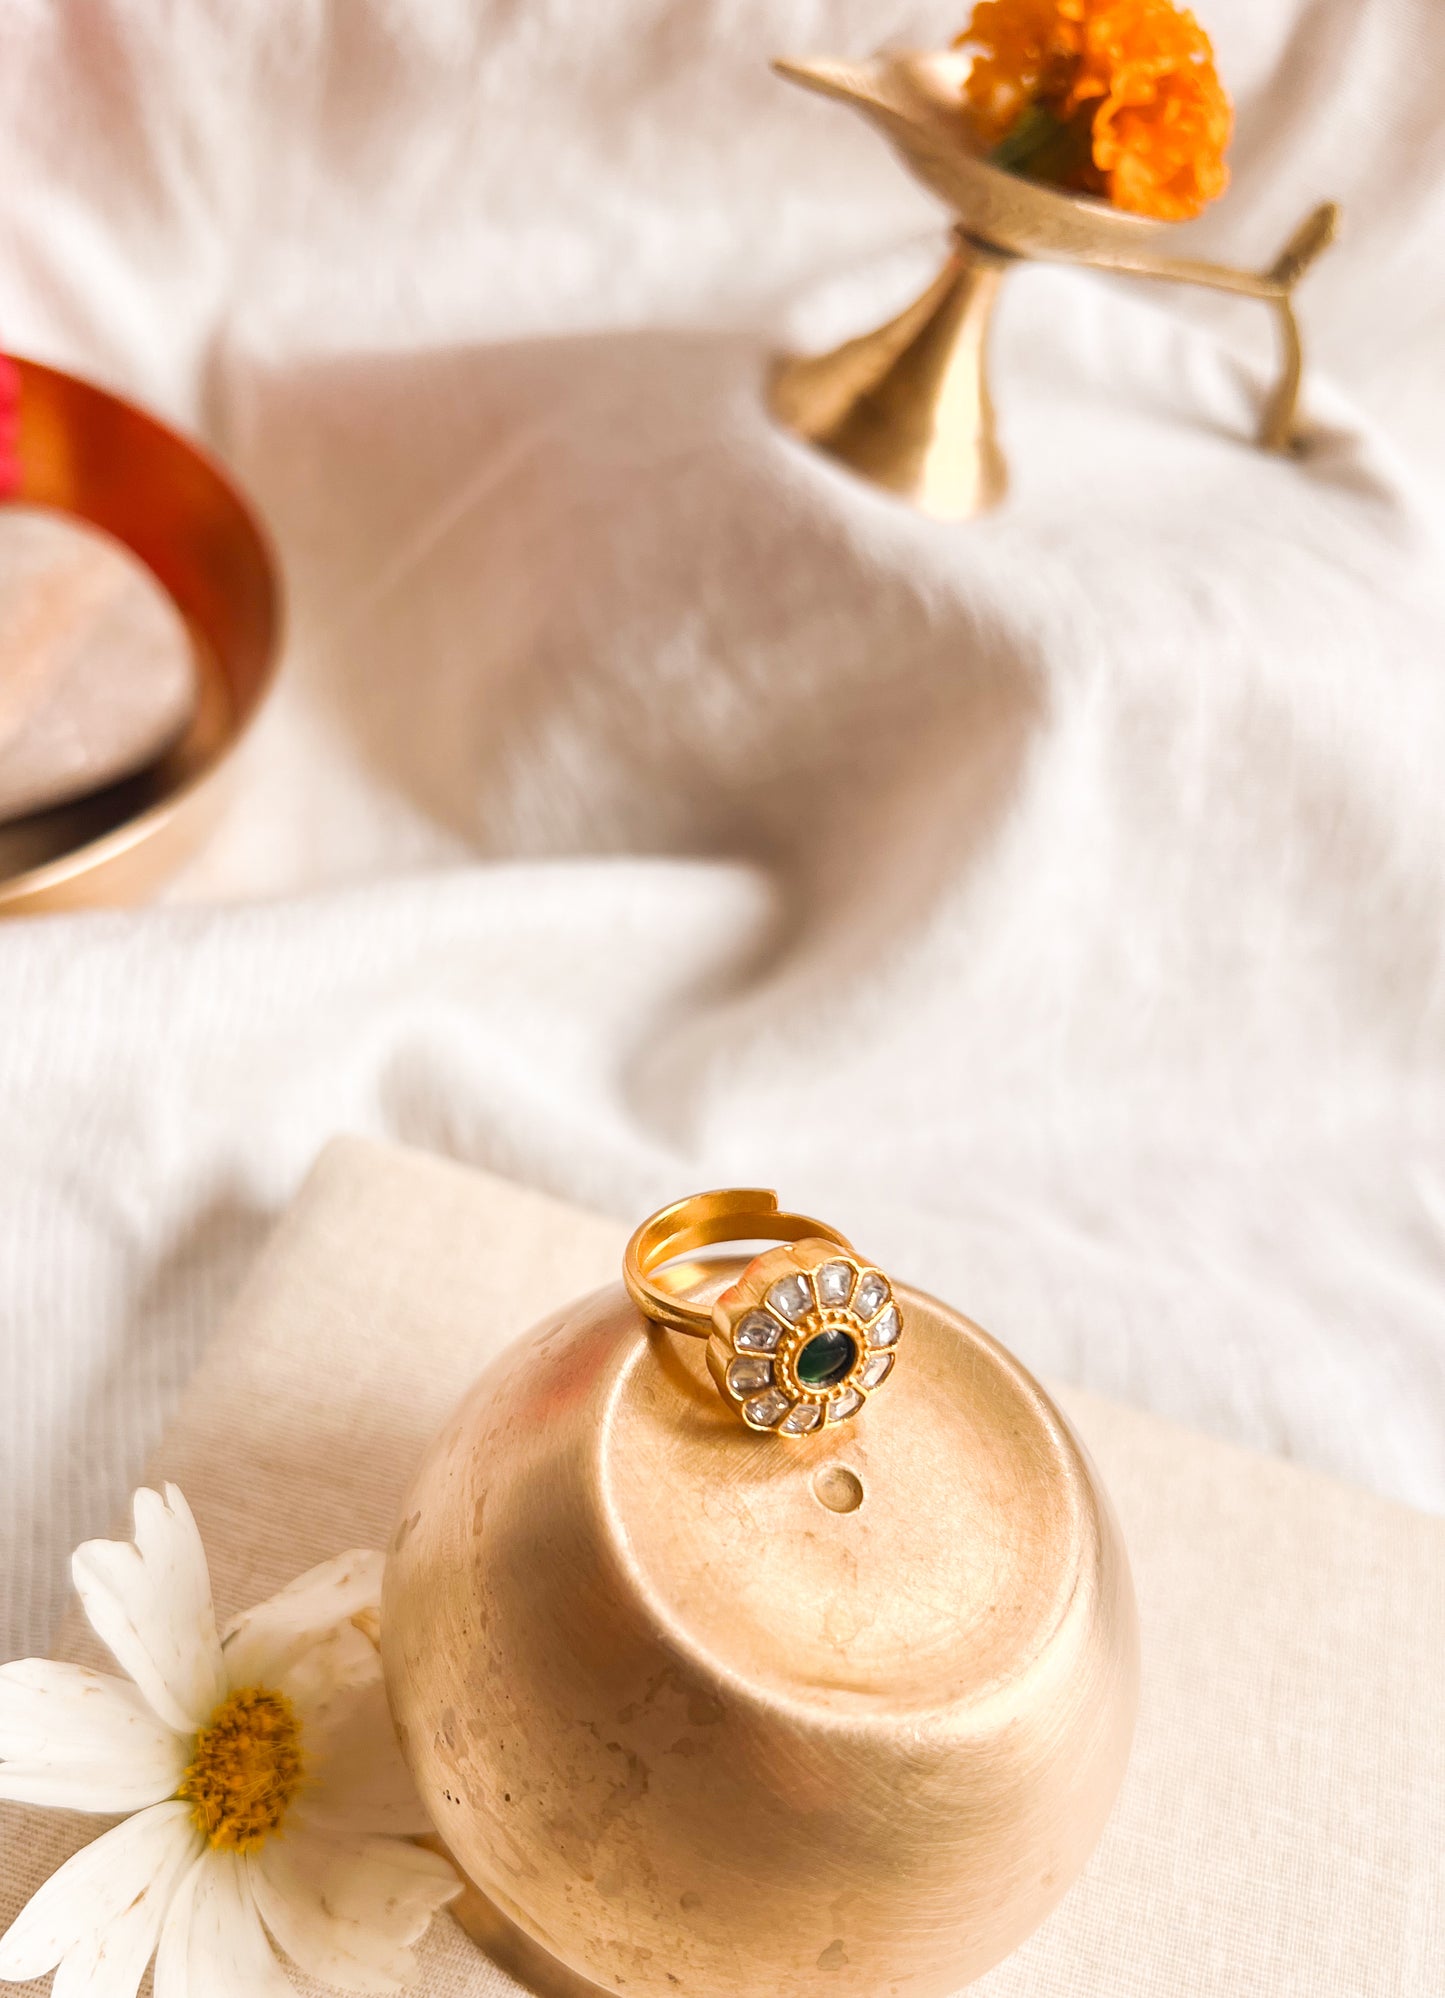 Mandala gold plated silver ring with green kundan